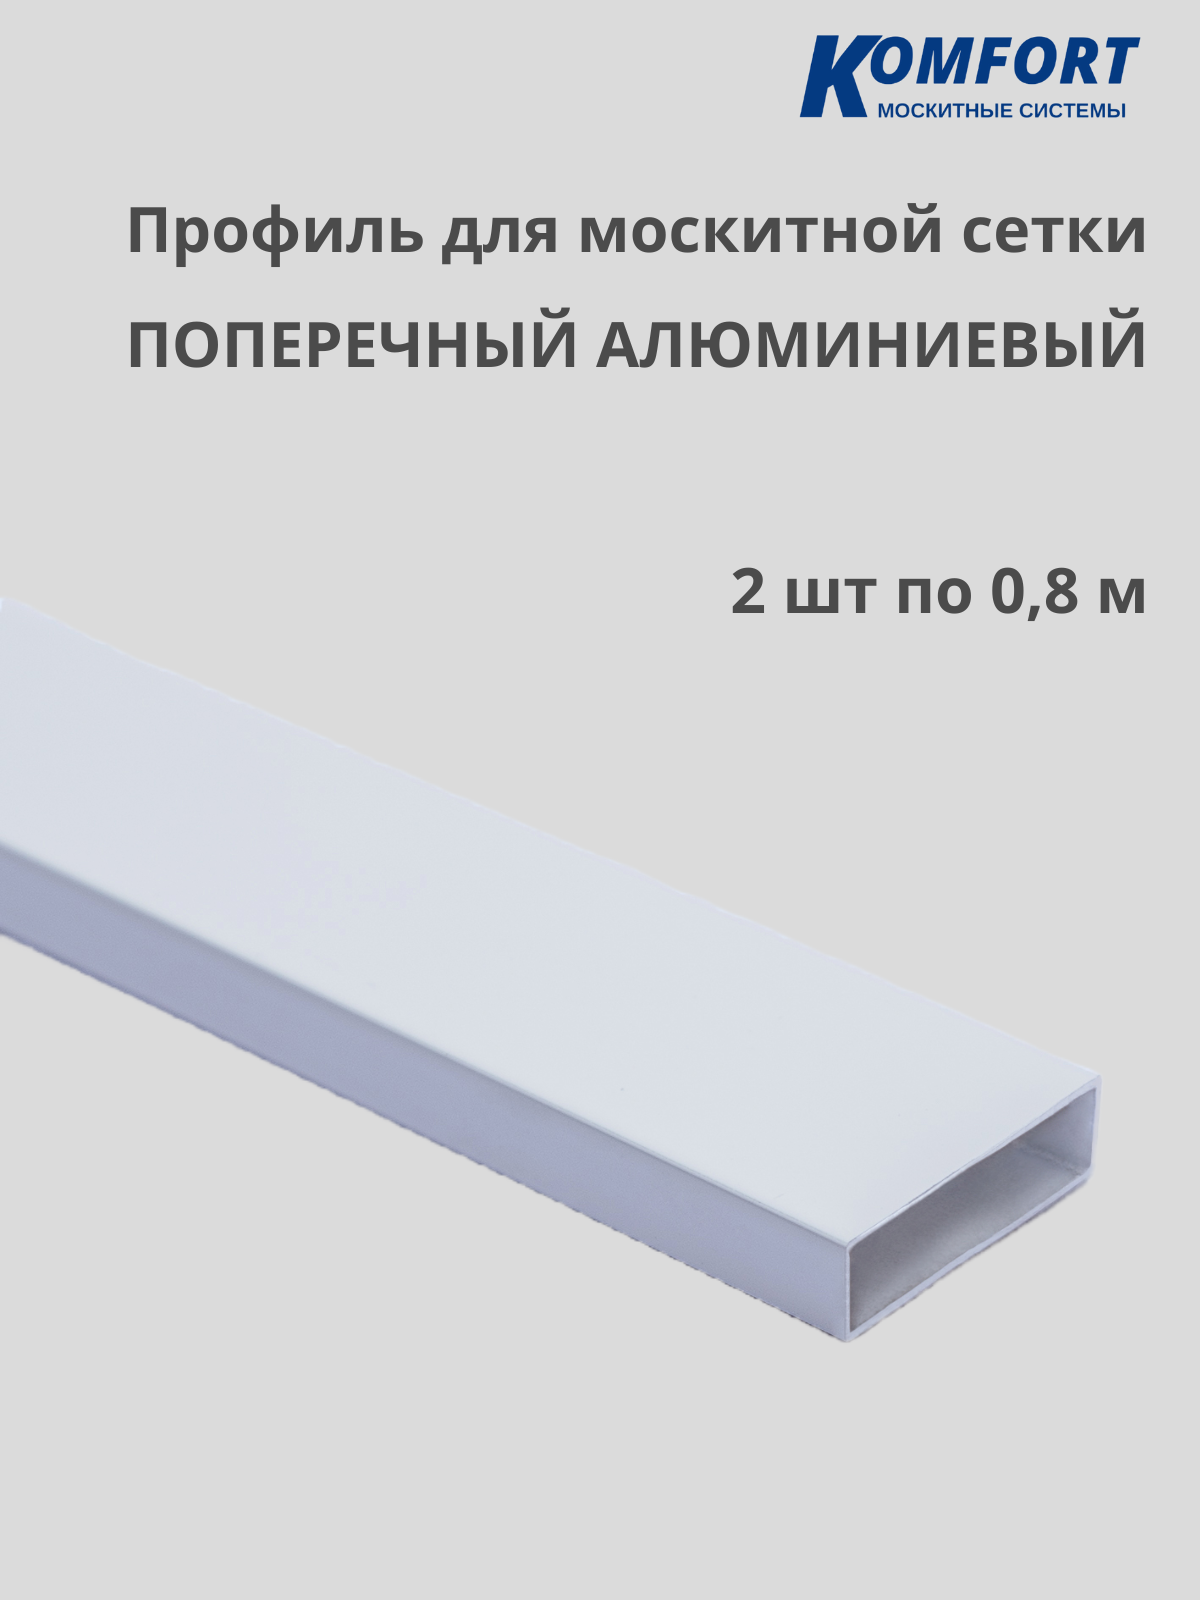 Профиль для москитной сетки поперечный алюминиевый белый 0,8 м 2 шт